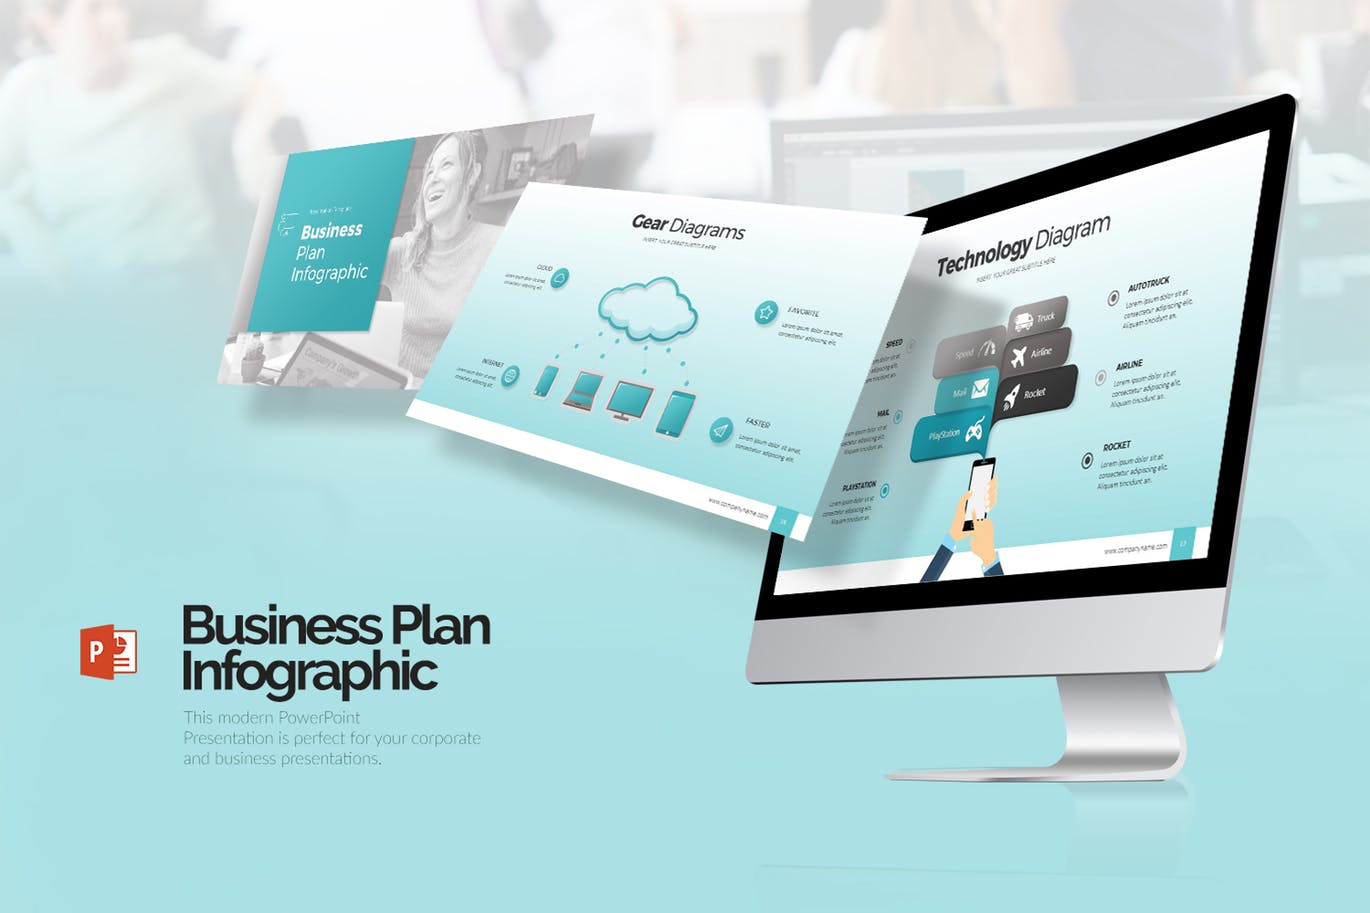 商业计划书信息图表第一素材精选PPT模板 Business Plan Infographic Presentation (PPTX)插图